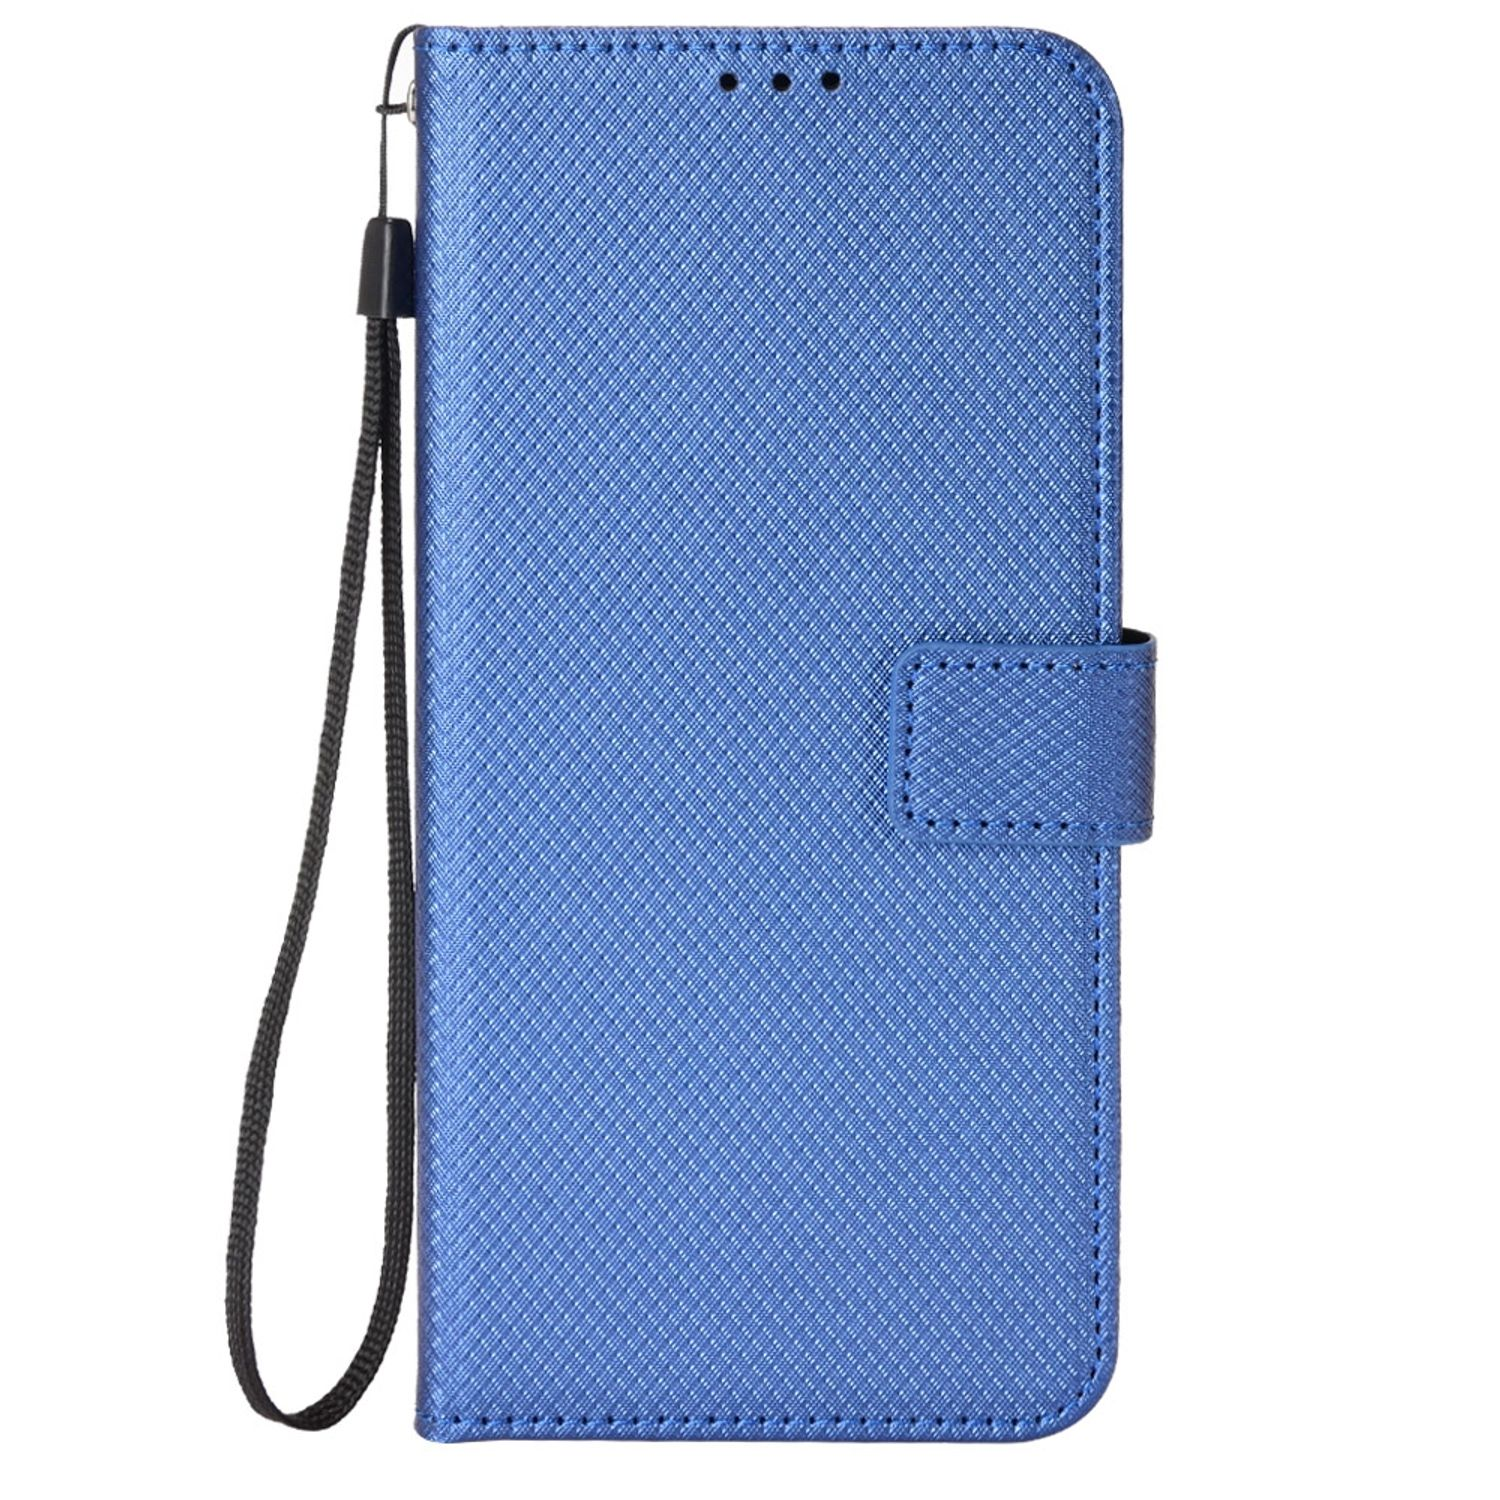 Global, 11 Xiaomi, 11S Note KÖNIG Book Note DESIGN Blau / Case, Redmi Bookcover,